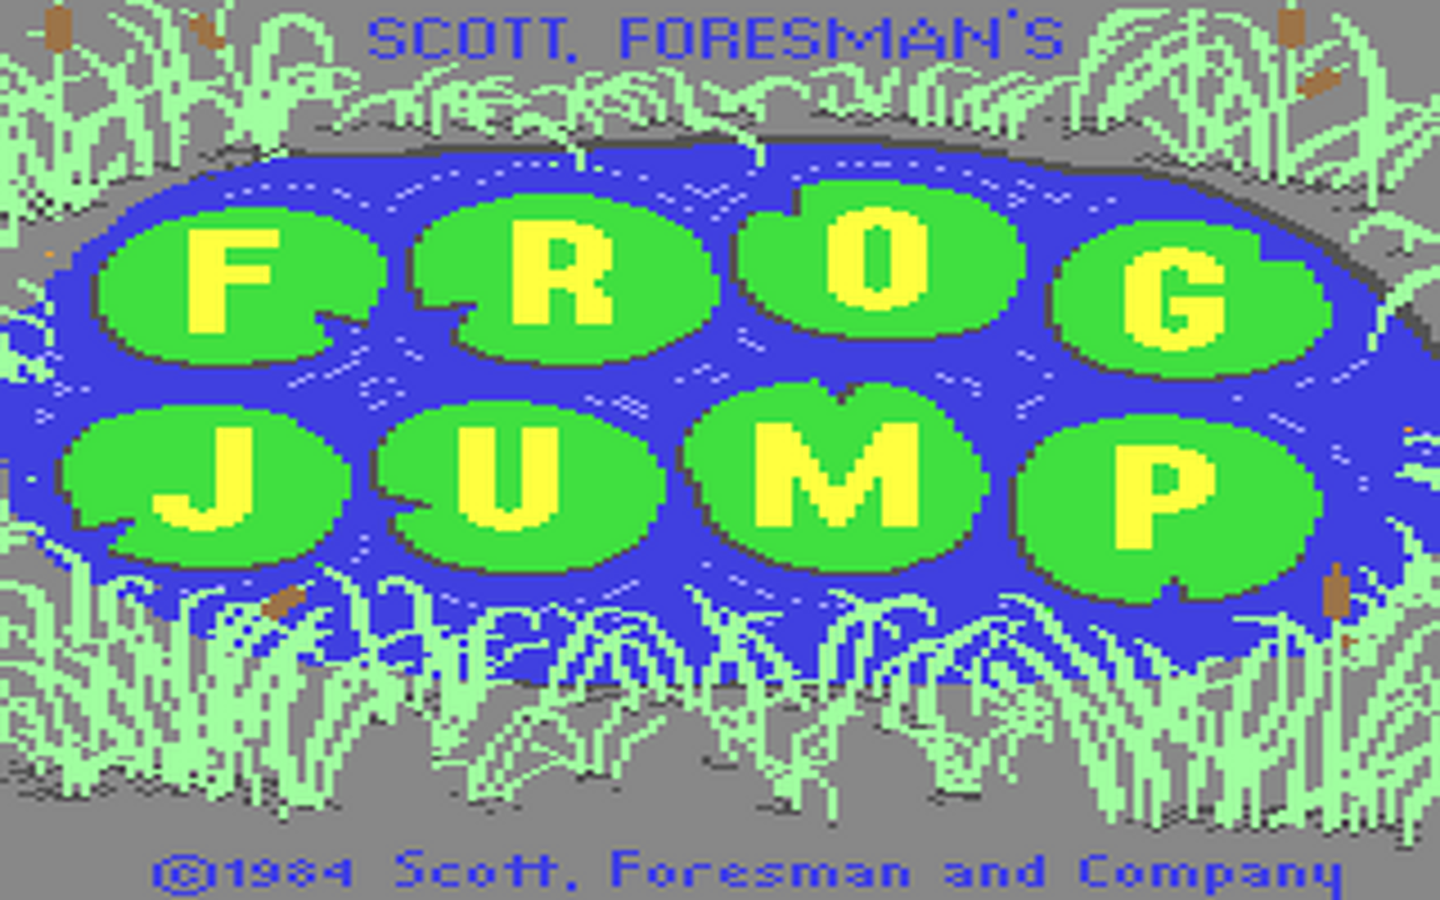 C64 GameBase Frog_Jump Thunder_Mountain 1984